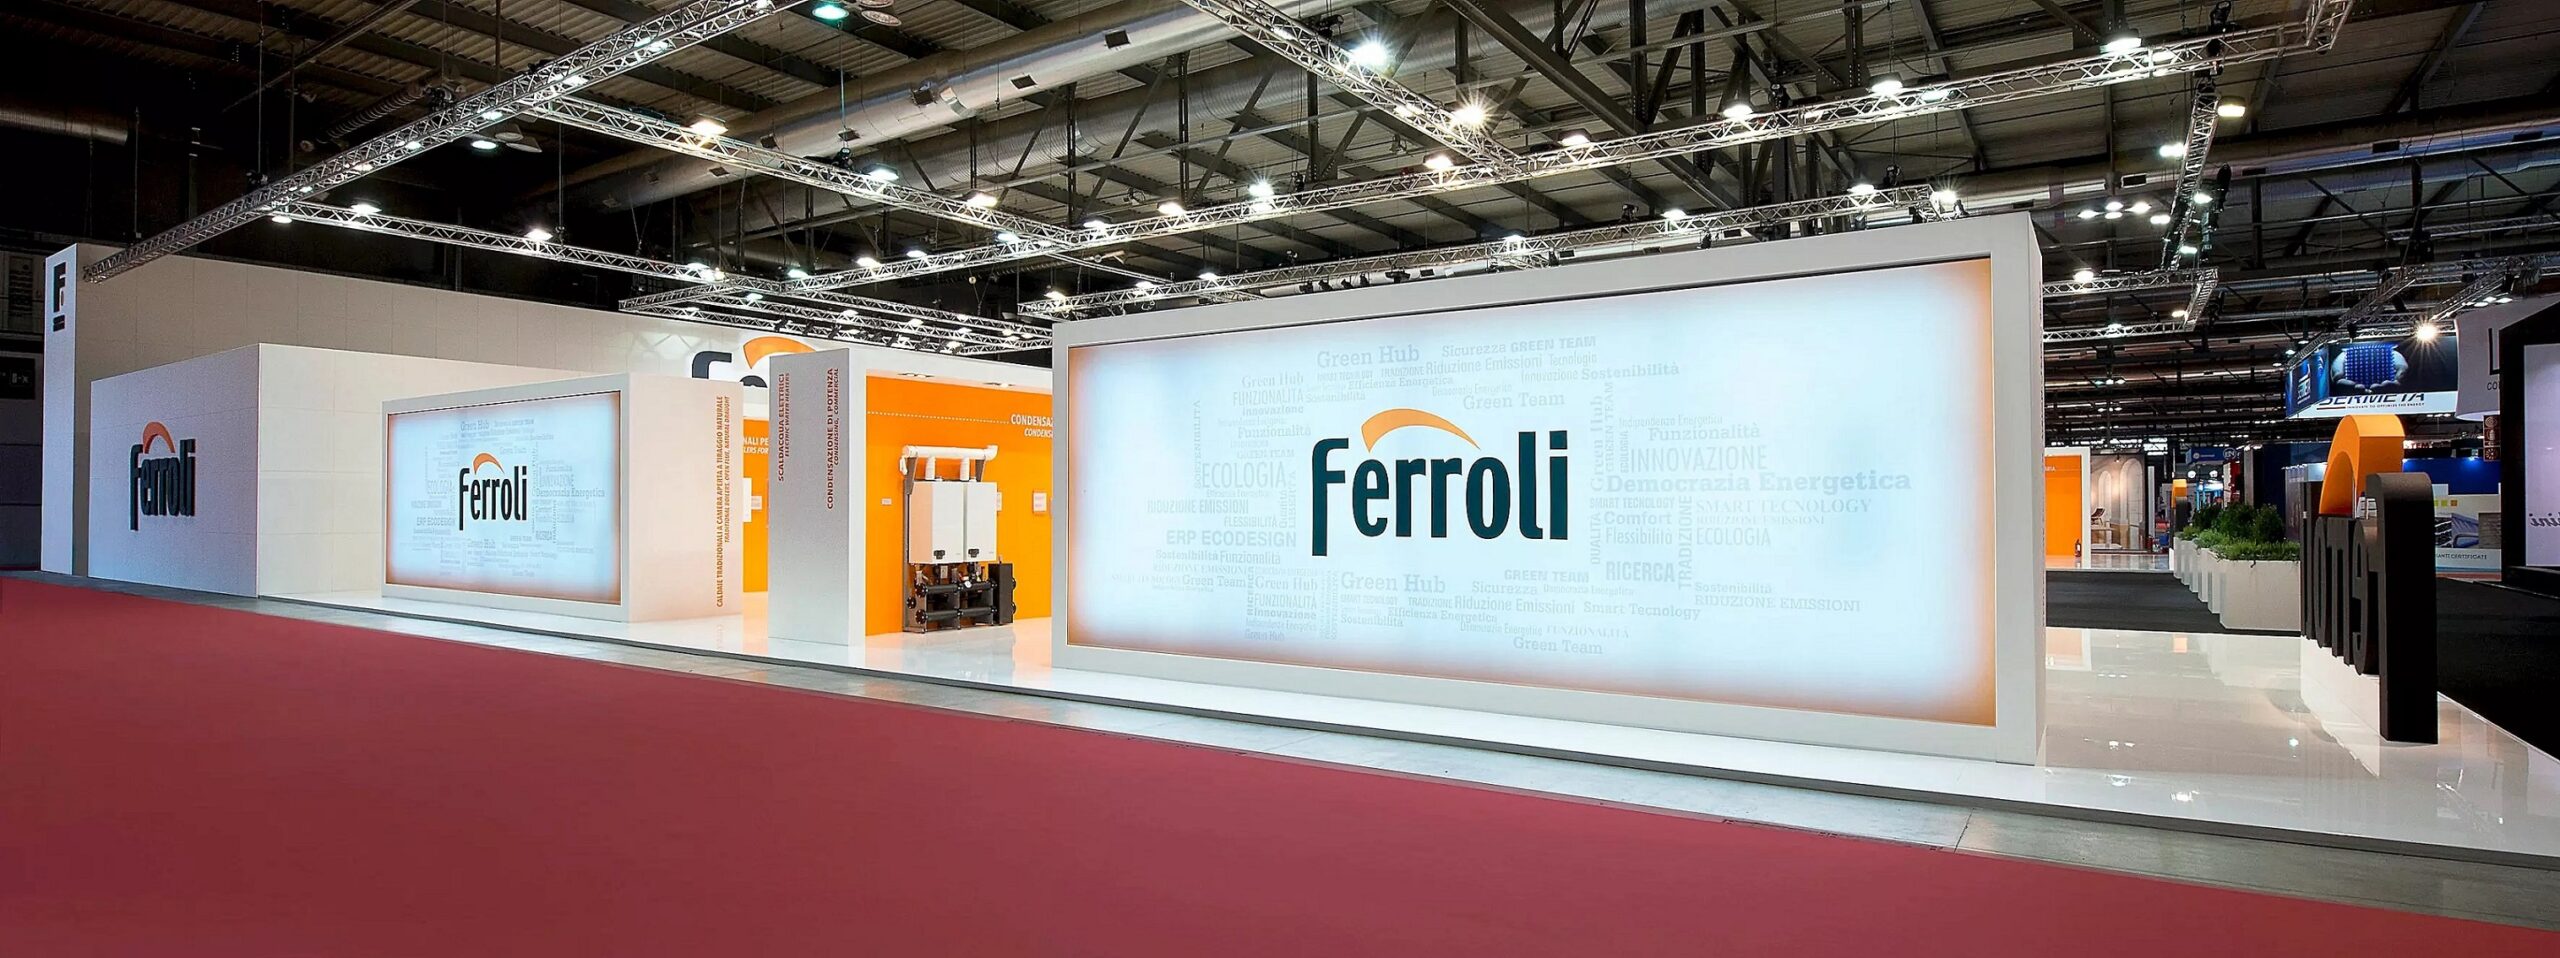 Il gruppo Ferroli è uno dei player internazionali nel mercato del riscaldamento e condizionamento per il comfort domestico e professionale